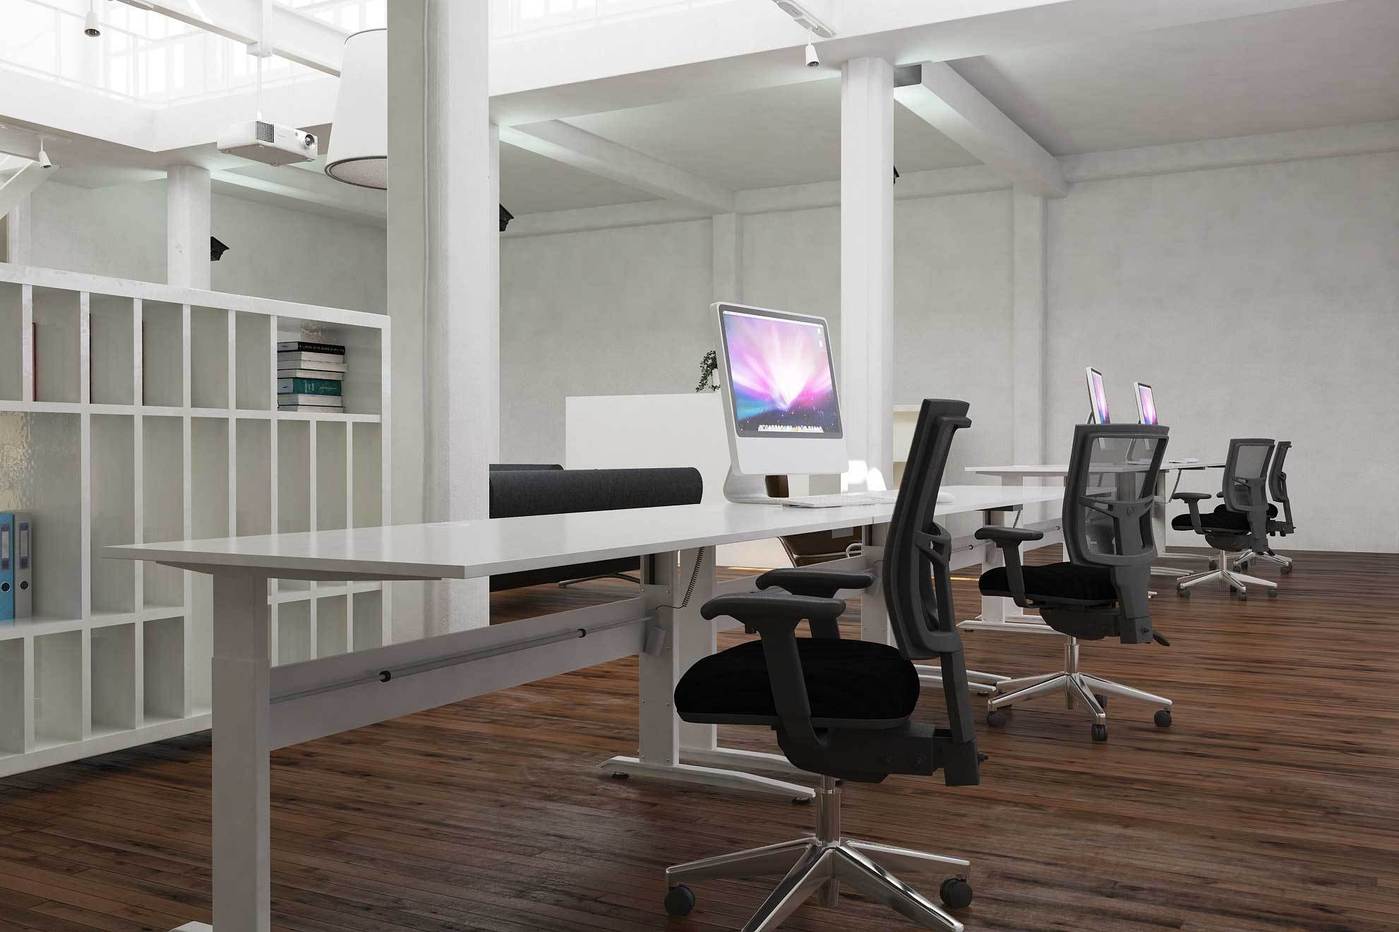 Biurko z regulowaną wysokością blatu 501-15 w kolorze srebrnym wykorzystane w przestrzeni biurowej